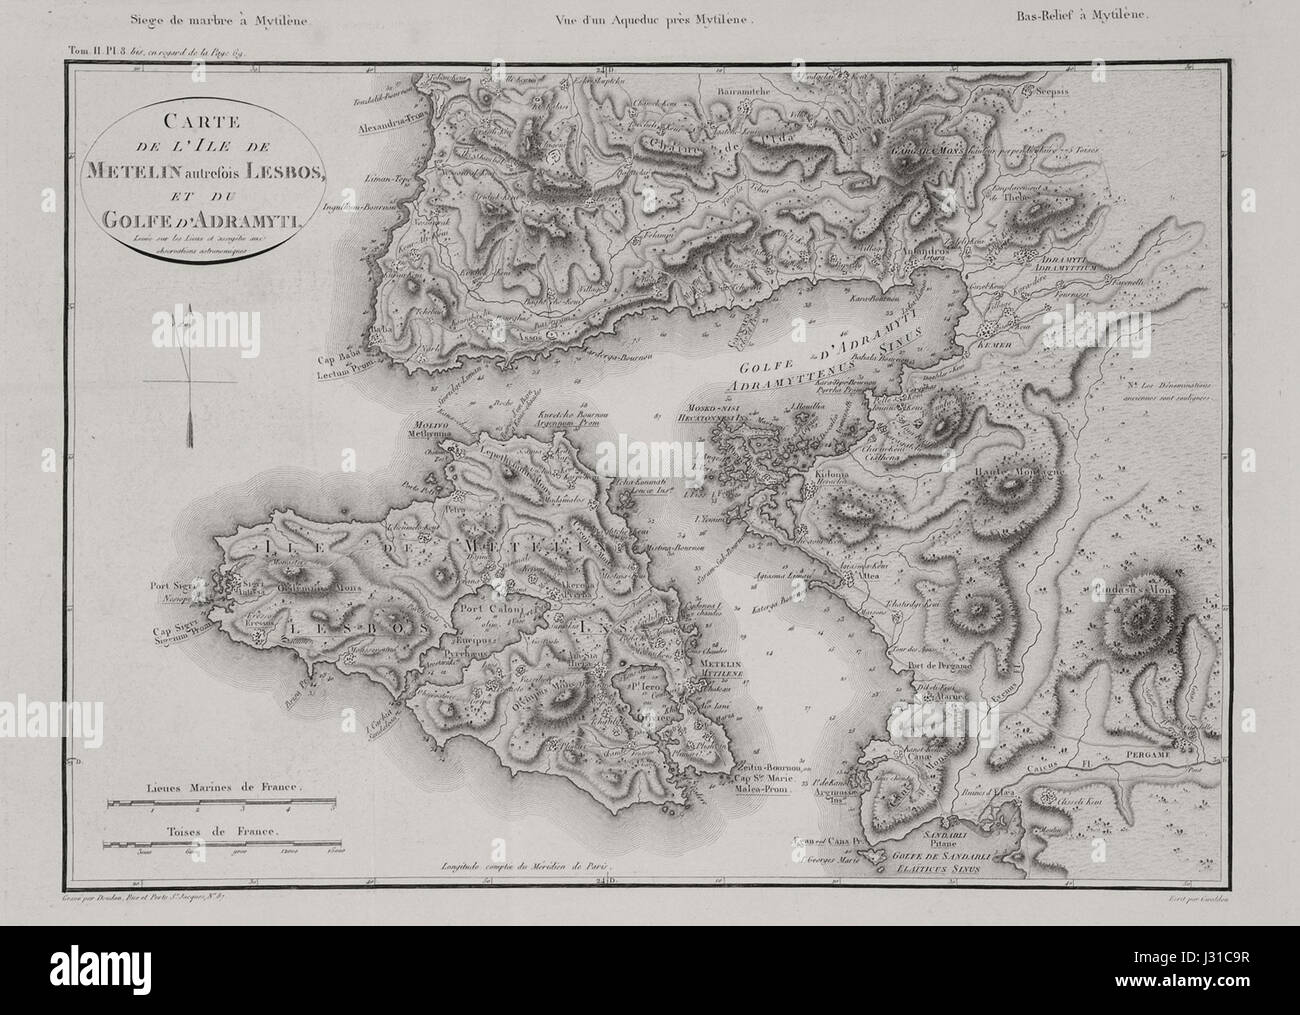 Carte de l'ile de Metelin autrefois Lesbos, et du golfe d'Adramyti - Choiseul-gouffier Gabriel Florent Auguste De - 1809 Banque D'Images